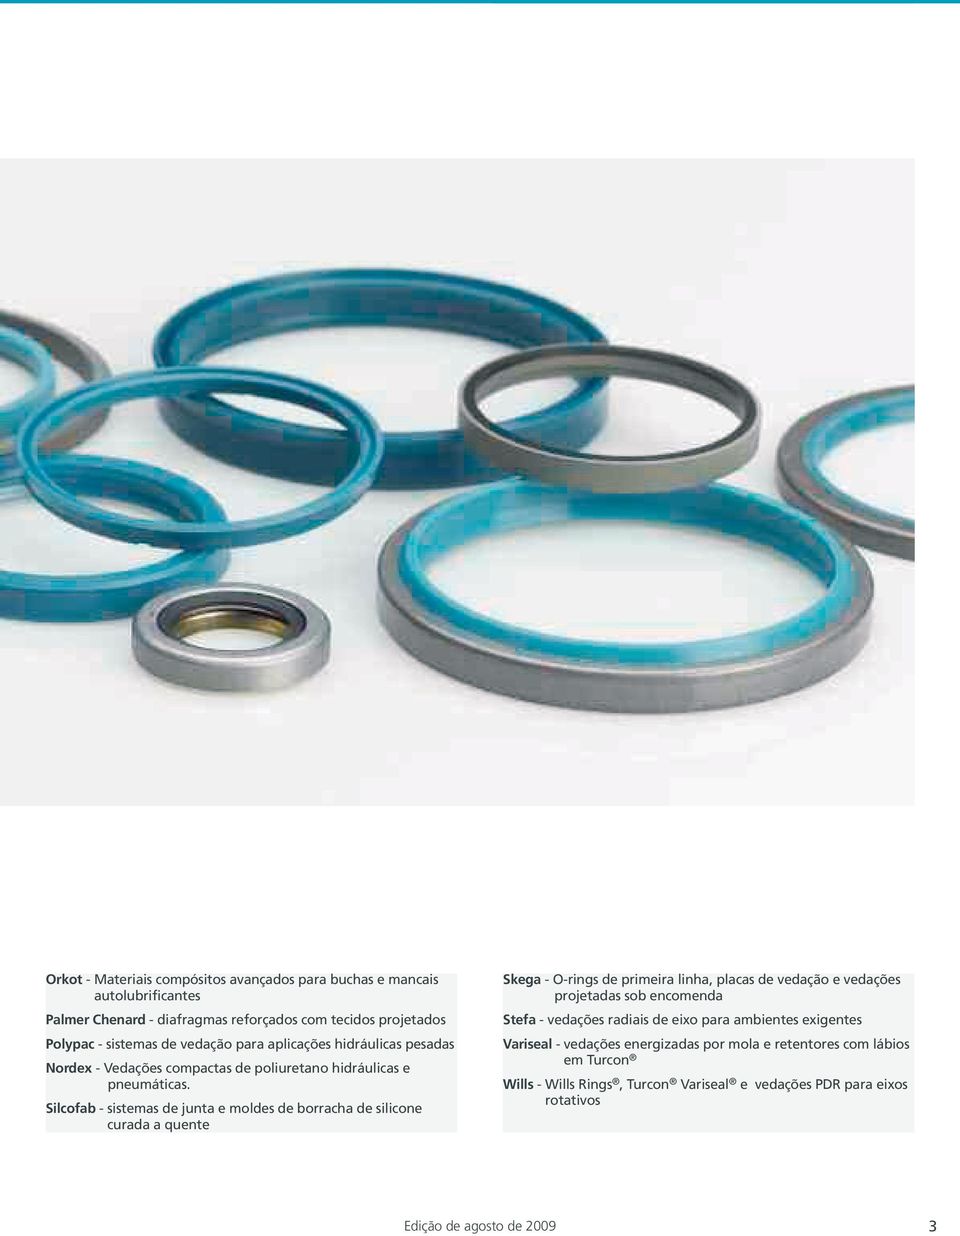 Silcofab - sistemas de junta e moldes de borracha de silicone curada a quente Skega - O-rings de primeira linha, placas de vedação e vedações projetadas sob